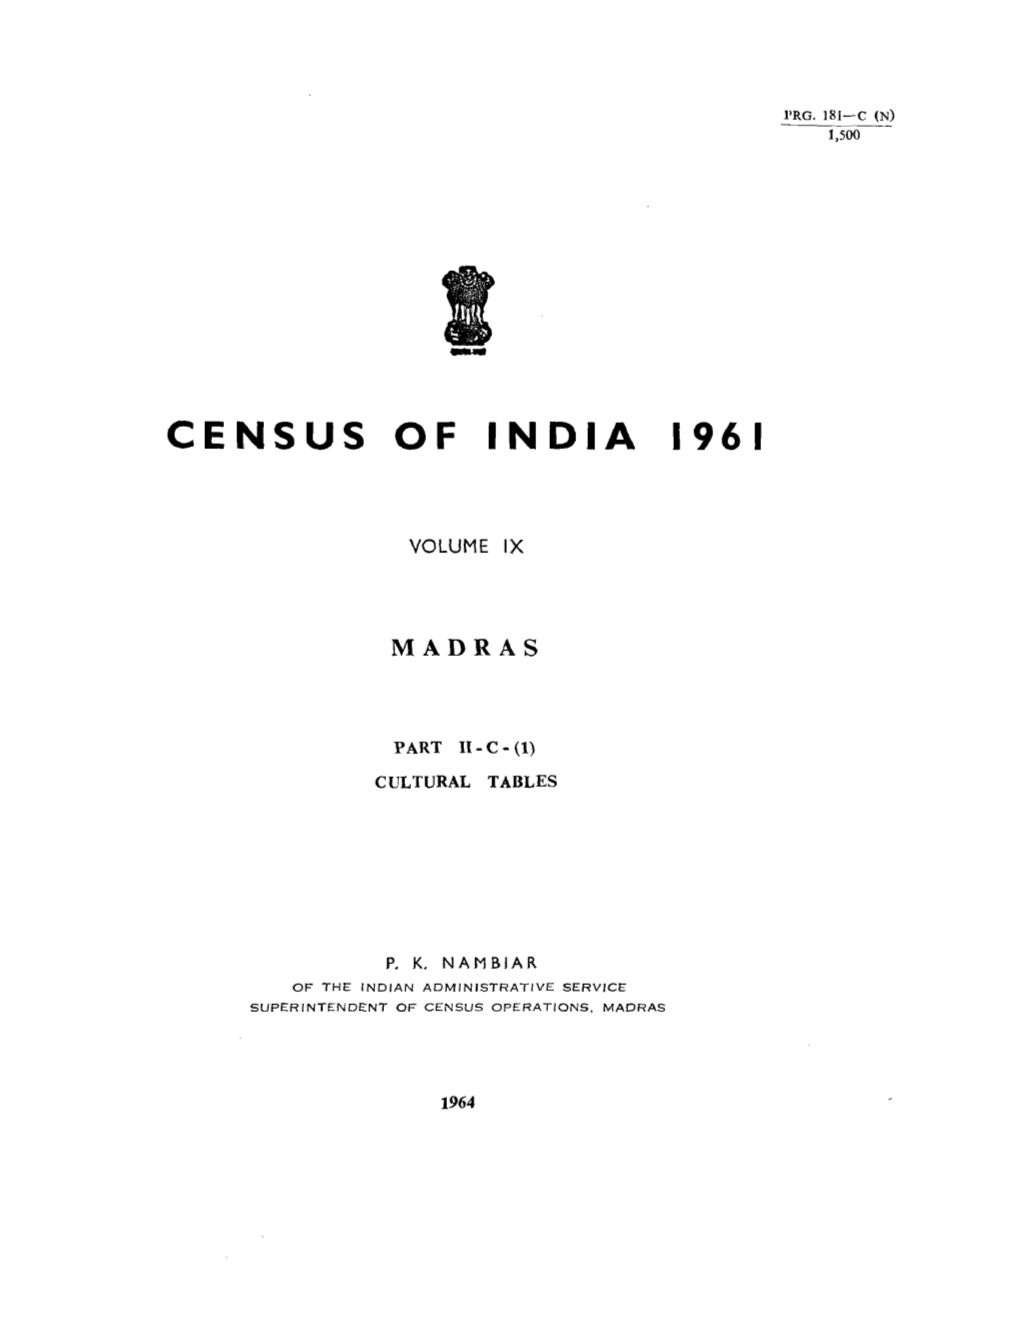 Madras- Cultural Tables, Part II-C (I), Vol-IX